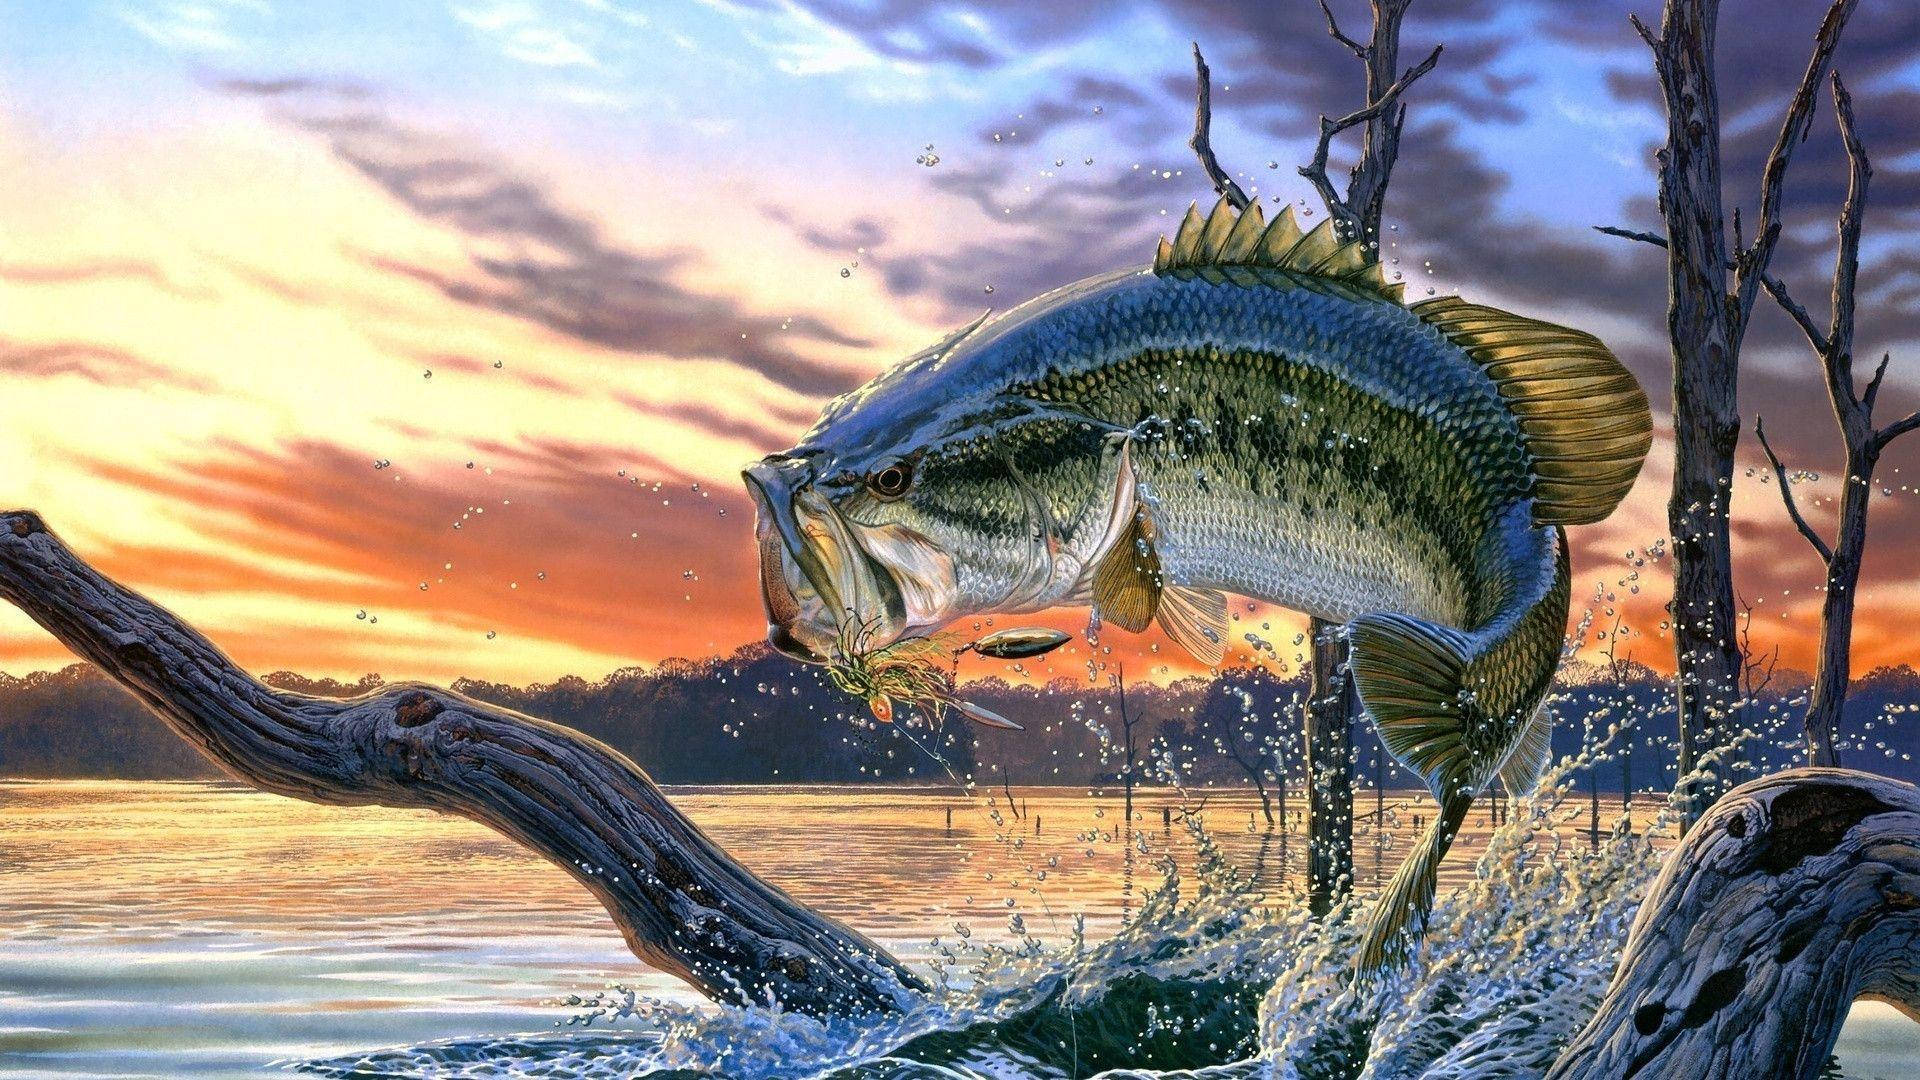 Enjoying the morning light, a largemouth bass swims through its lake habitat Wallpaper